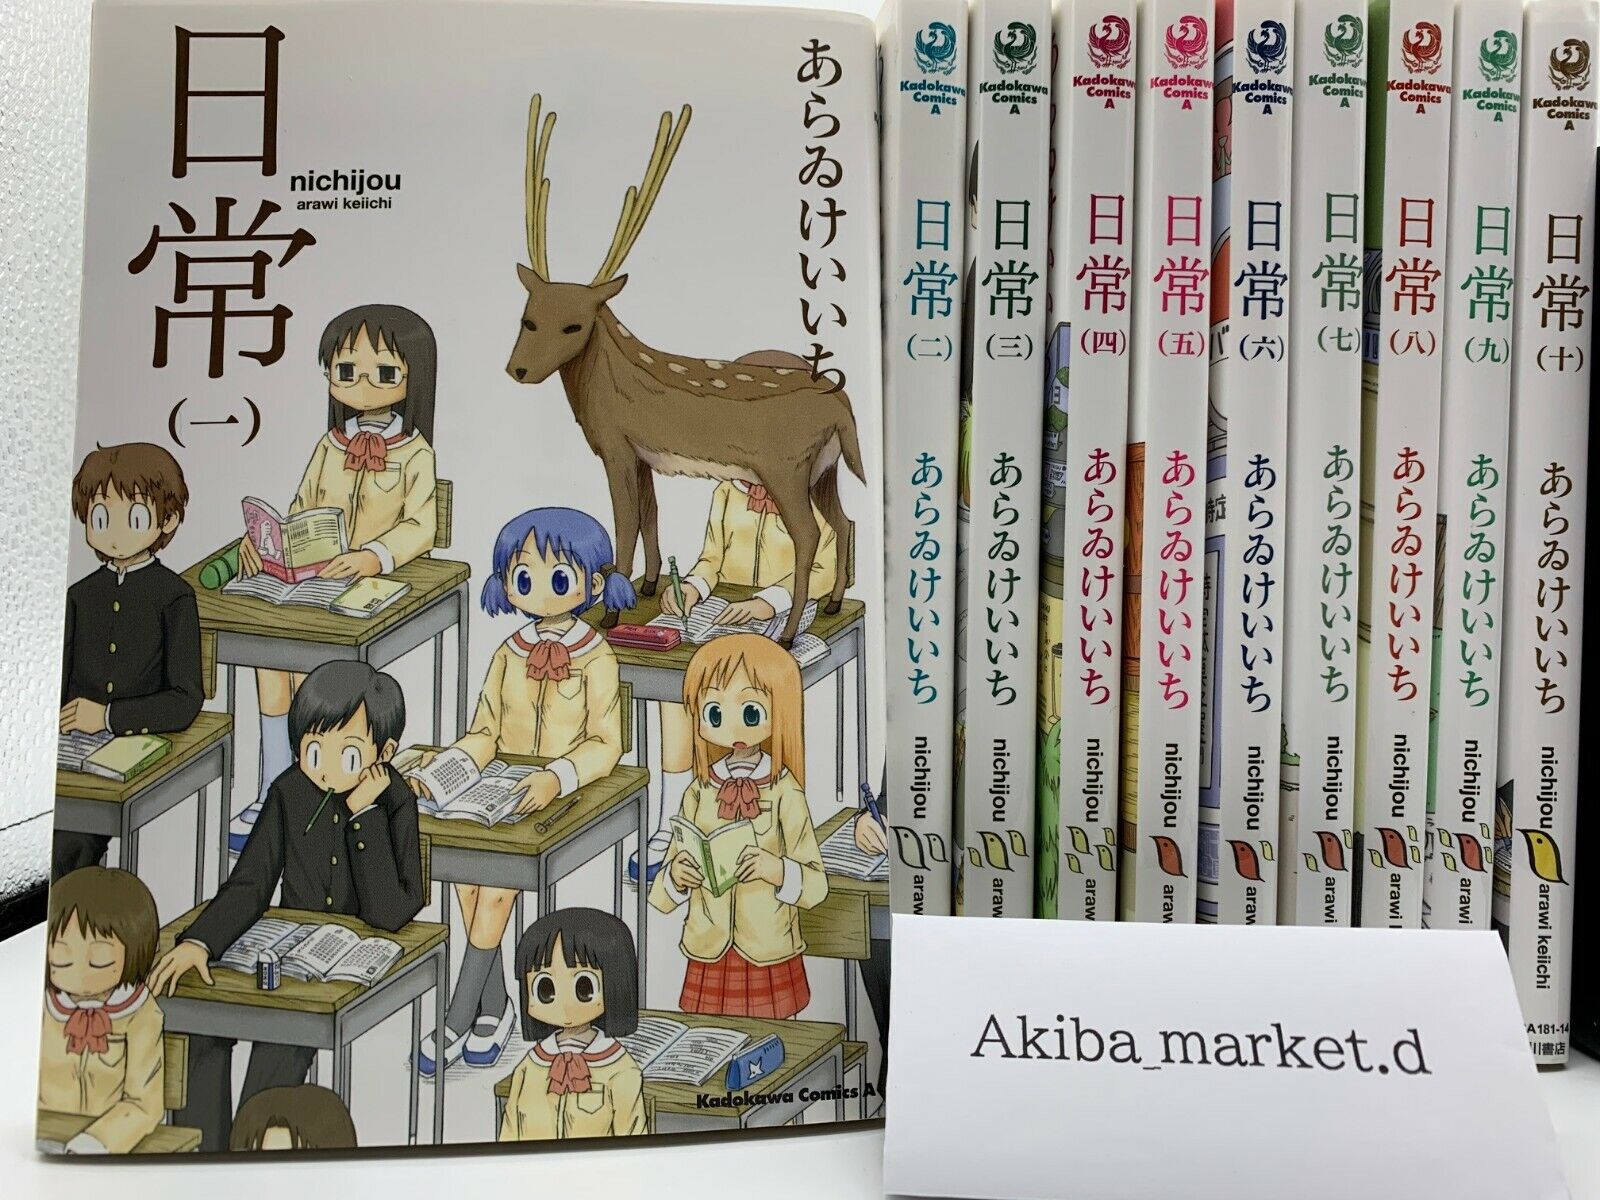 Nichijou  Japanese language  Vol.1-10 set  Manga Comics Kyoto animation 